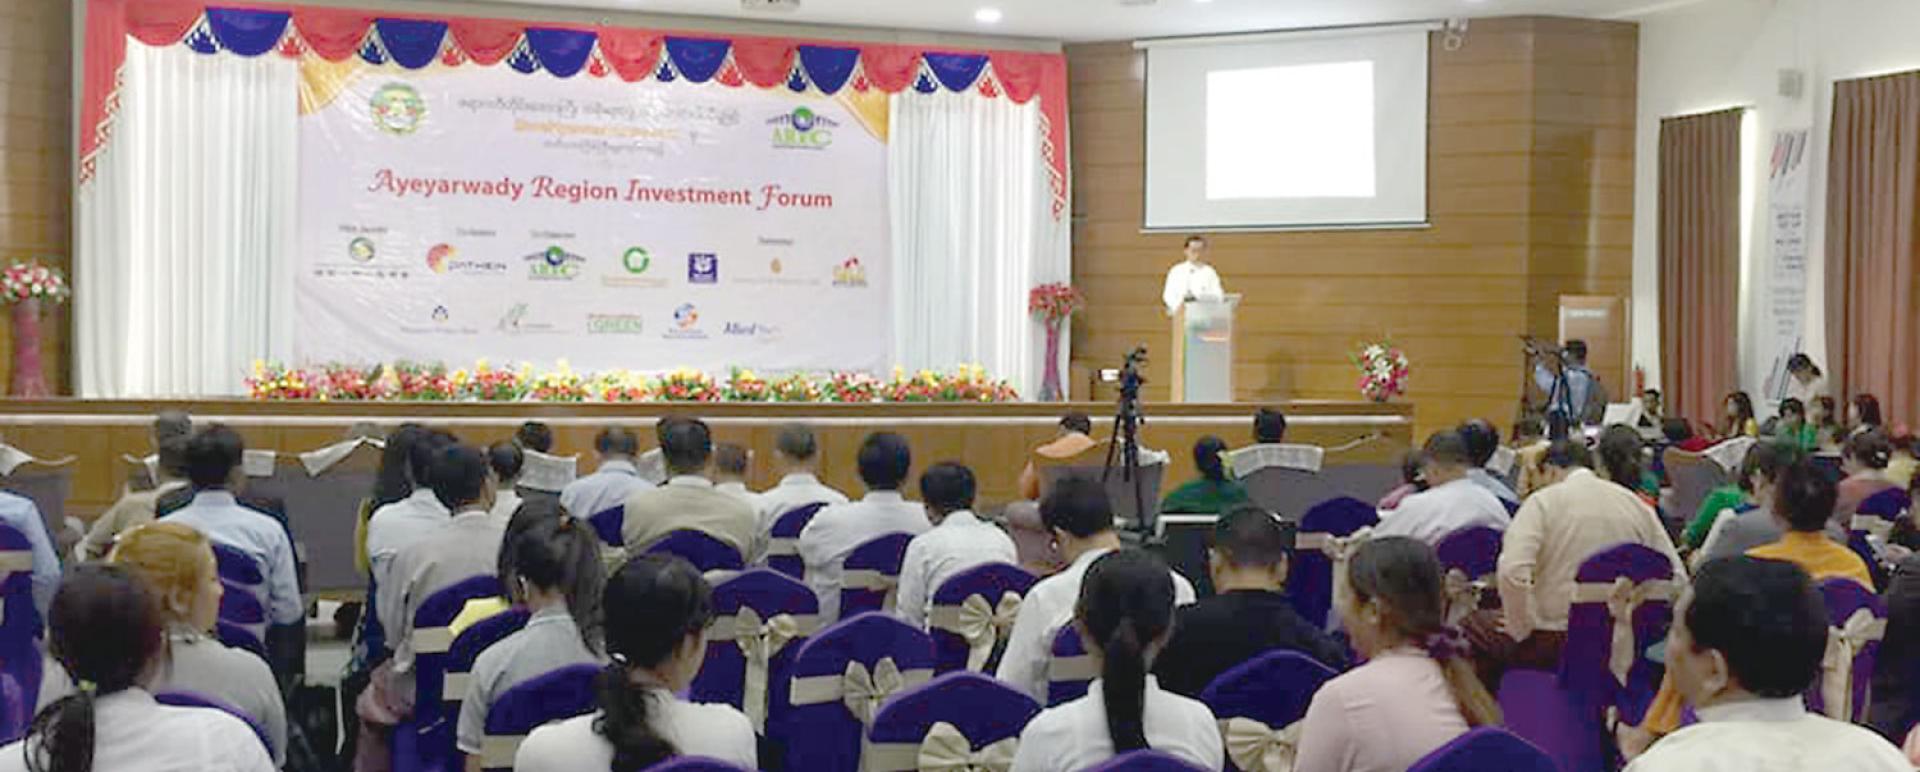 The ceremony of Ayeyarwady Region Investment Forum